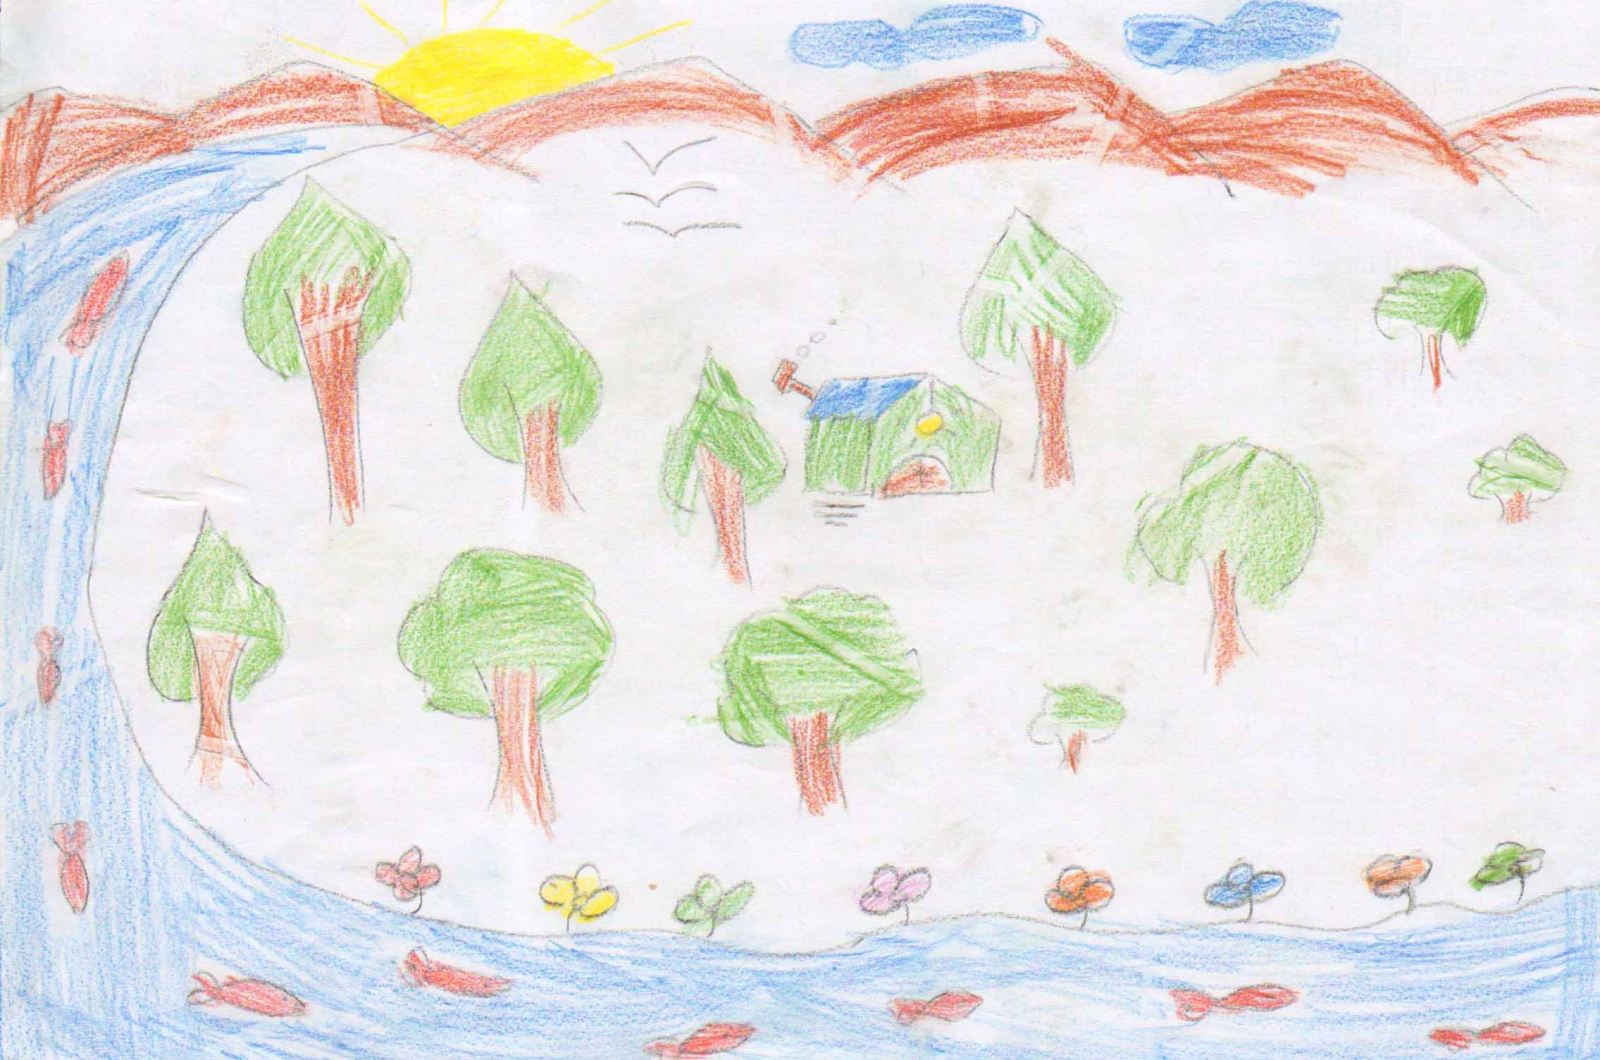 نقاشی کودکانه درباره ی جنگل